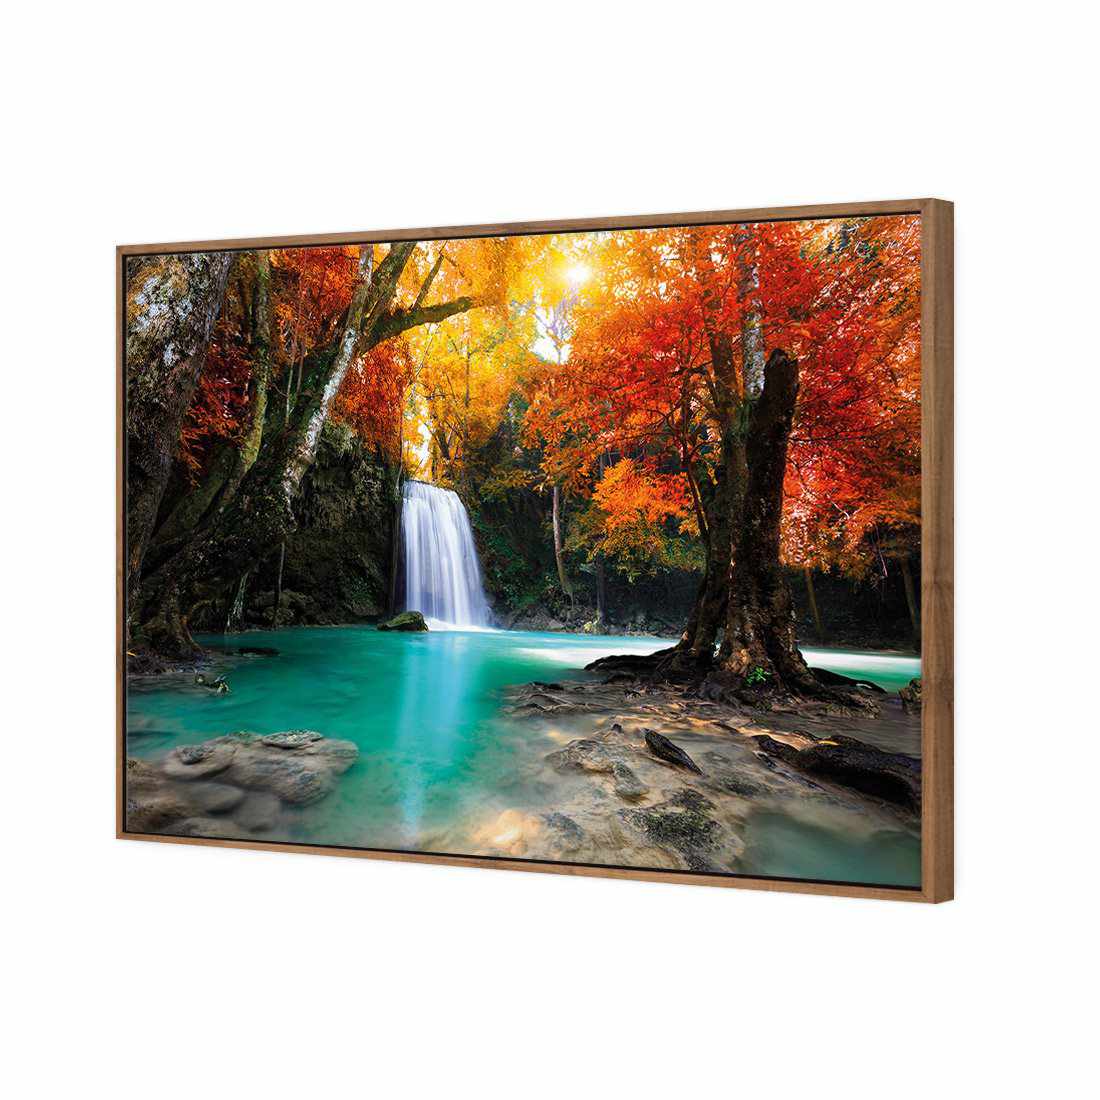 Autumn Waterfall Magic Canvas Art-Canvas-Wall Art Designs-45x30cm-Canvas - Natural Frame-Wall Art Designs